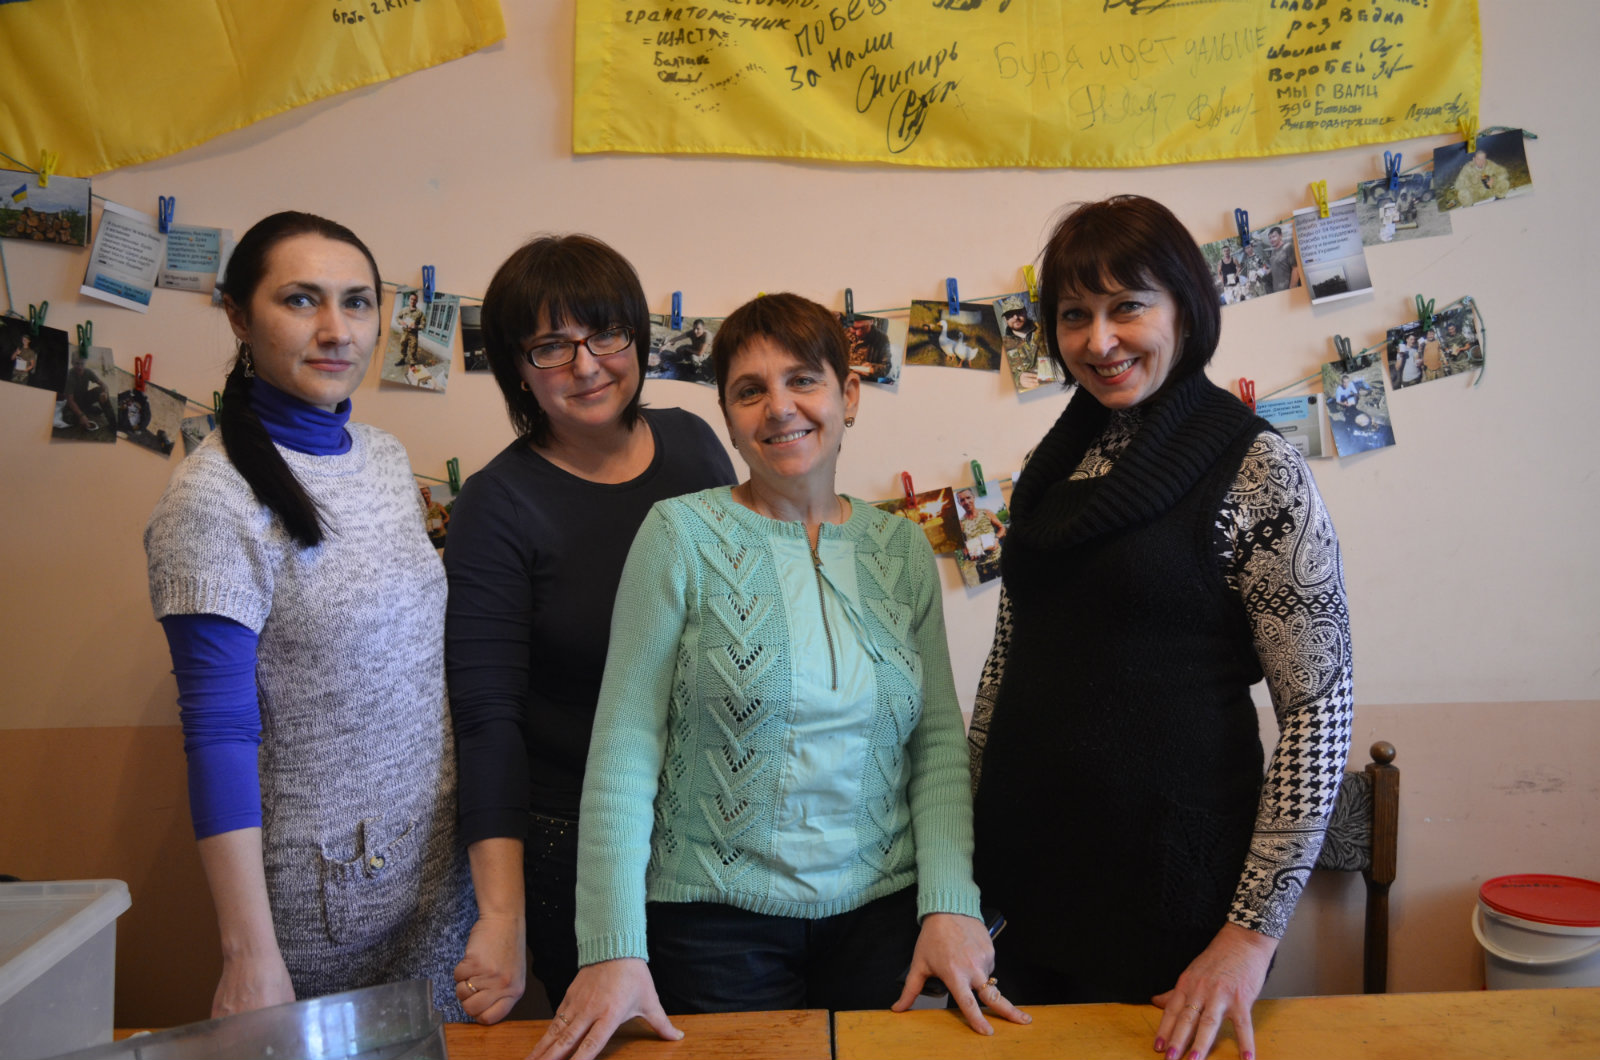 Харківські волонтери дивують бійців: пасти в тюбиках та цукати з огірків